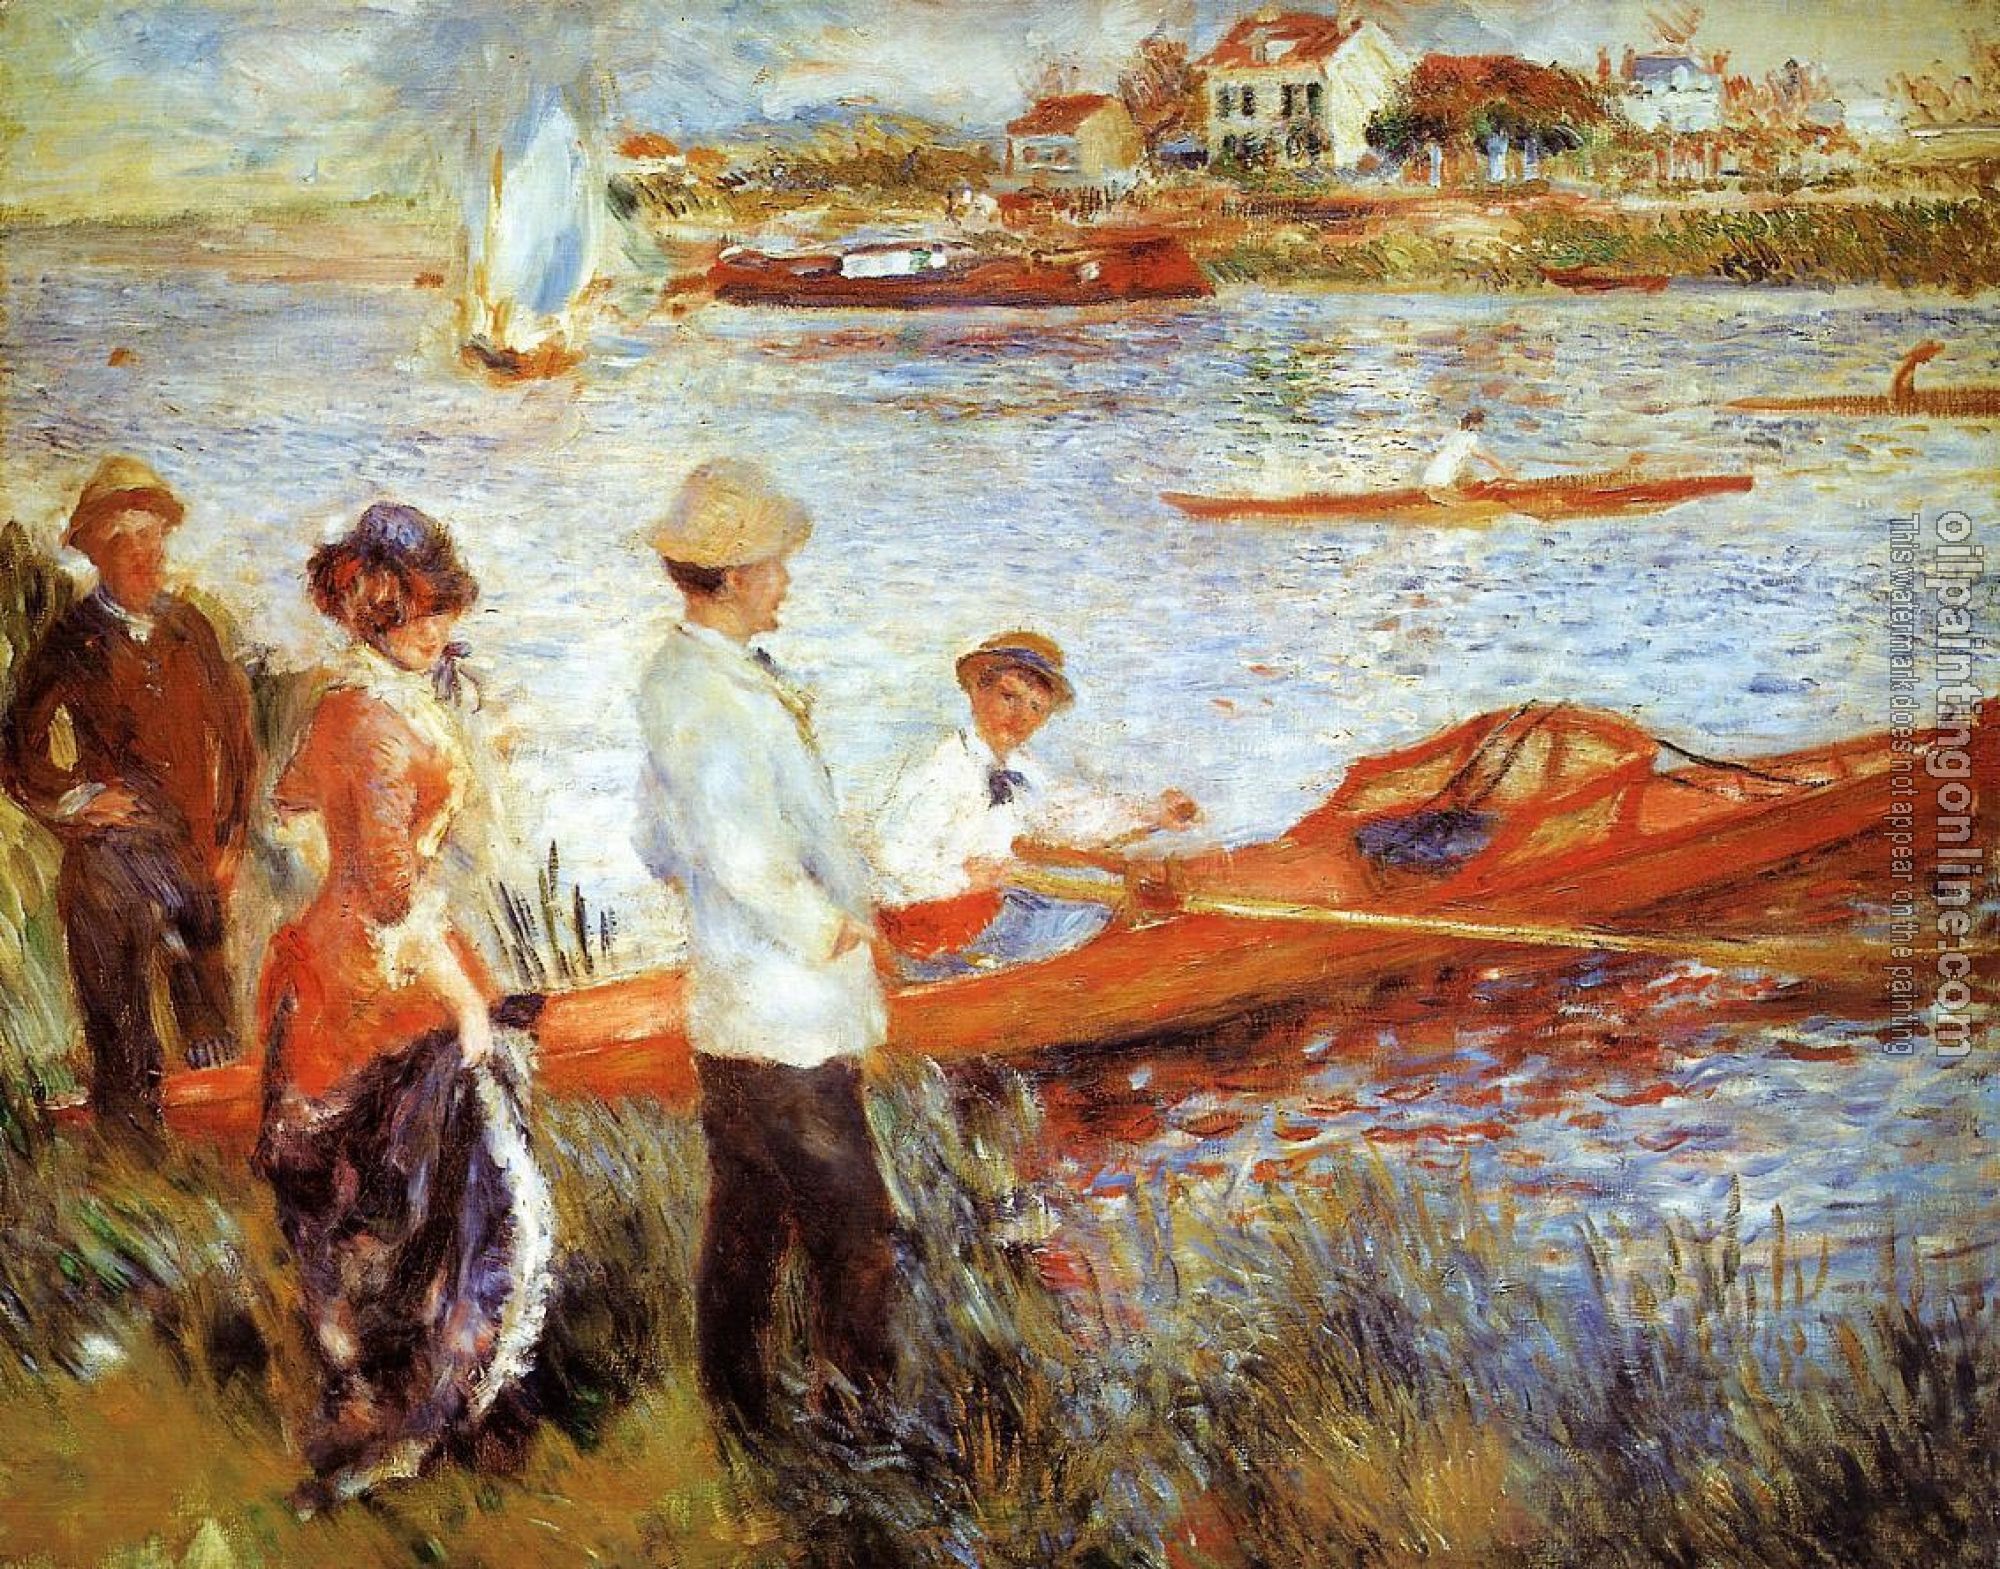 Renoir, Pierre Auguste - Oarsmen at Chatou